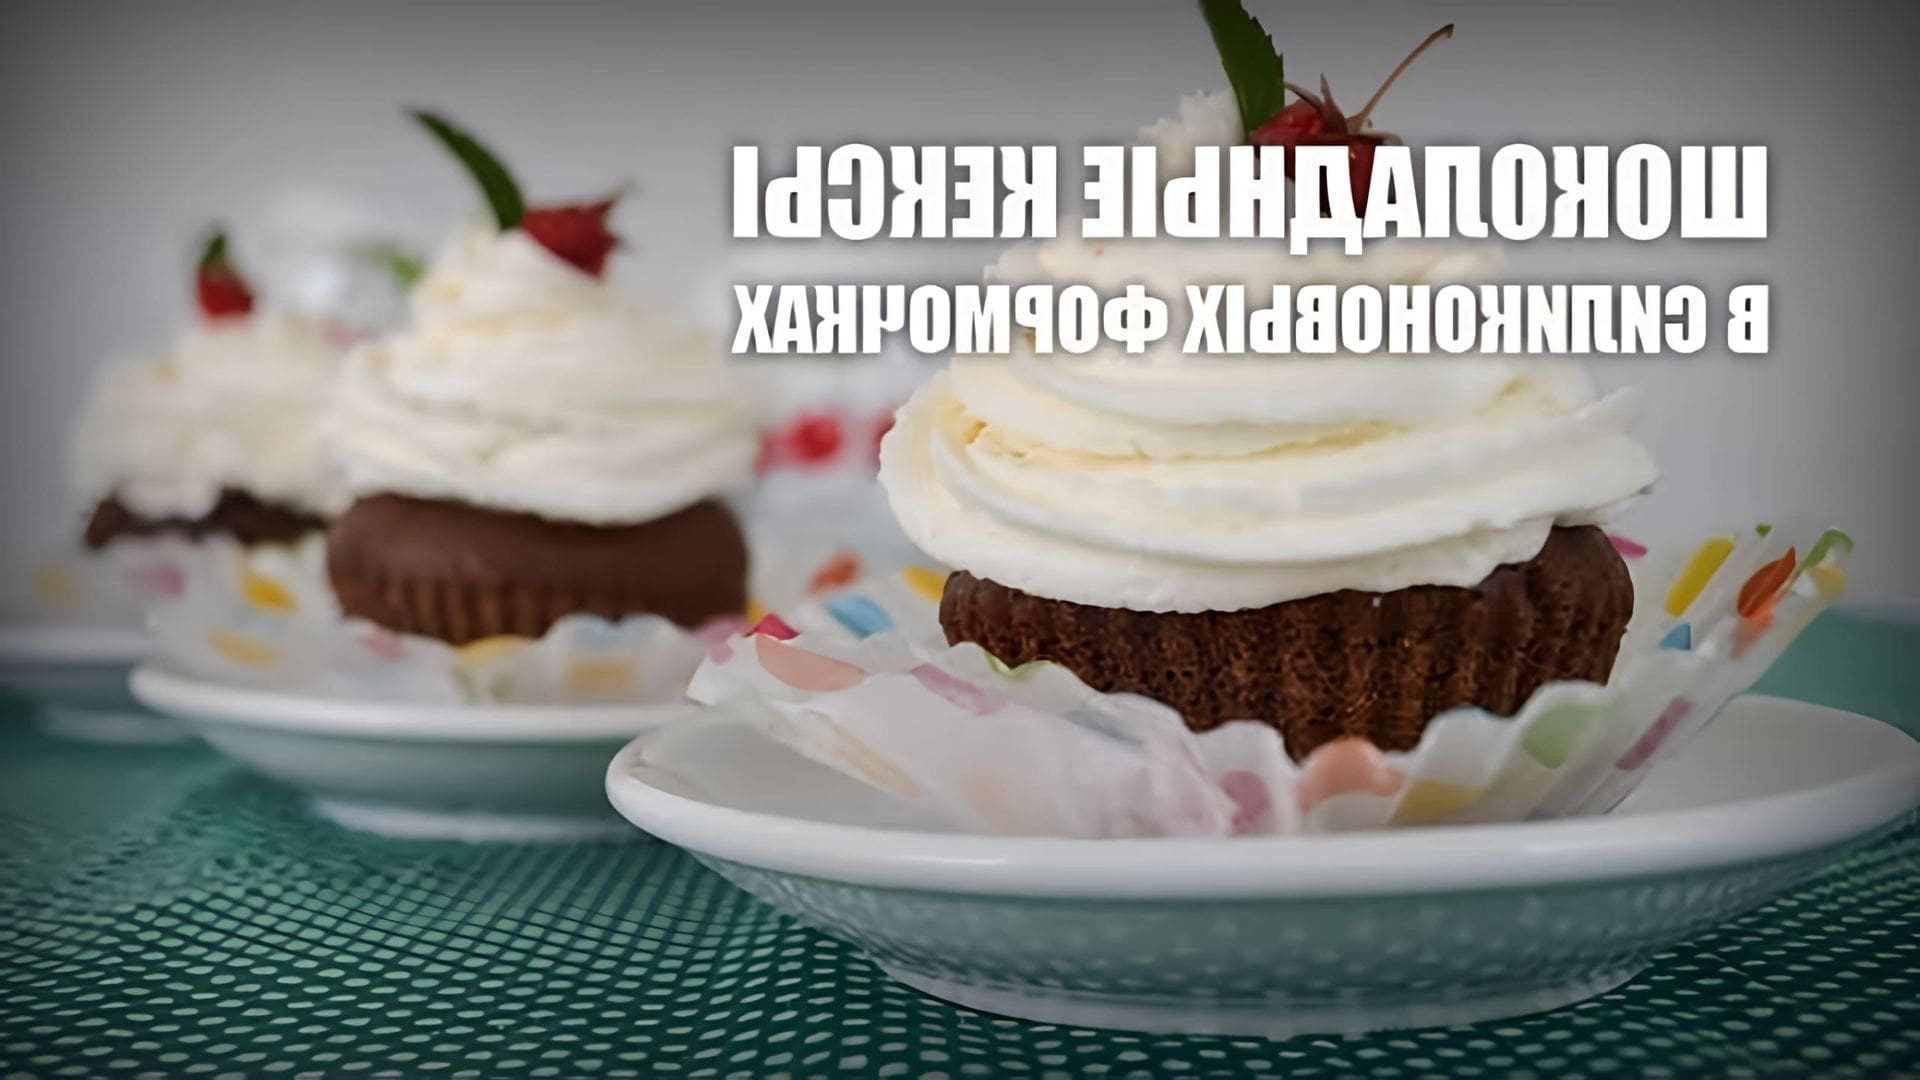 В этом видео демонстрируется рецепт приготовления шоколадных кексов в силиконовых формочках